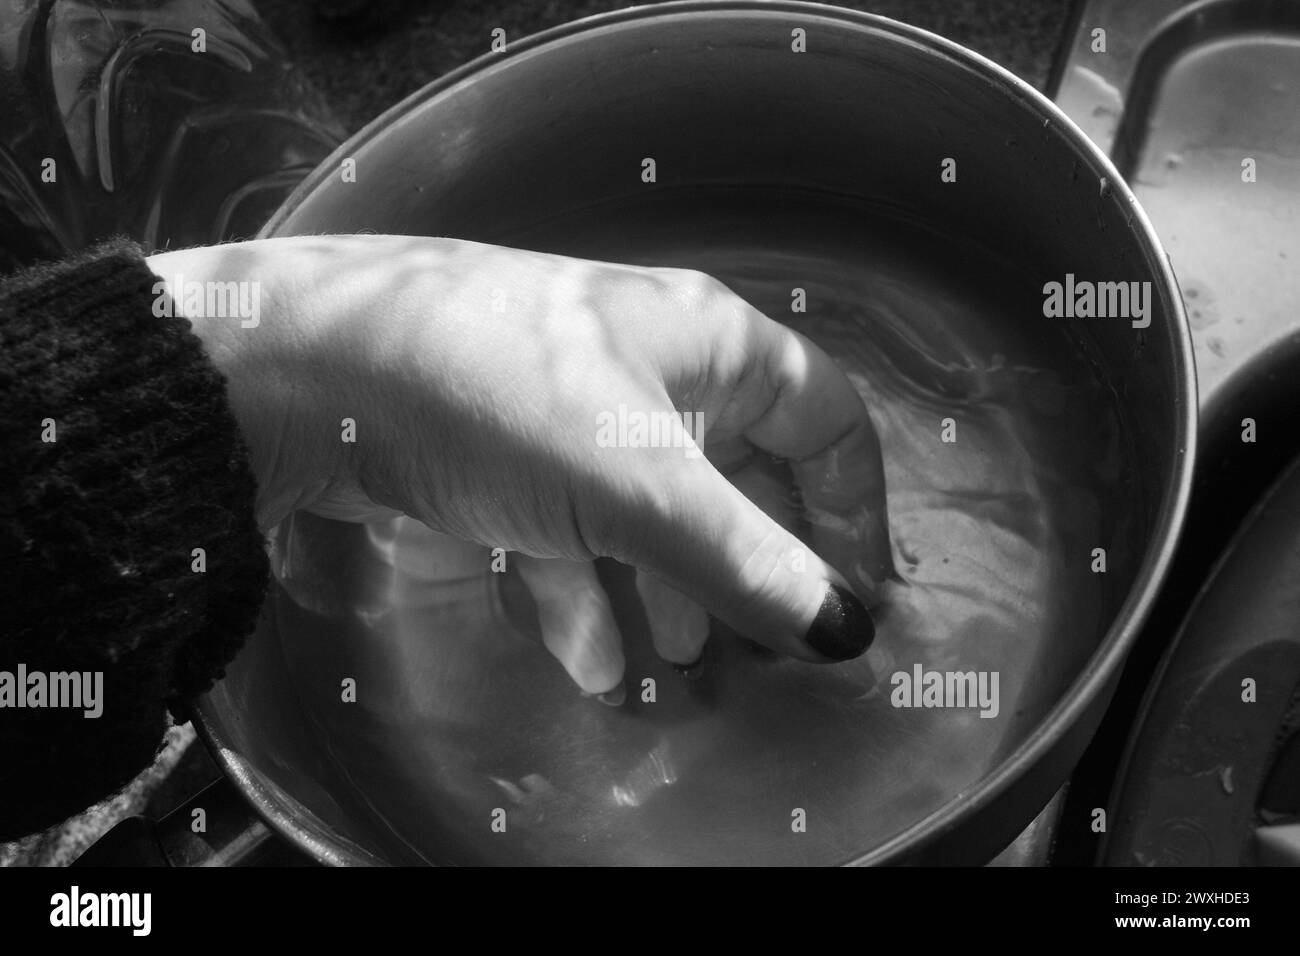 Waschen einer Hand - Schwarz-weiß-Aufnahme einer Hand im Inneren eines Metallkassers, der in Wasser mit kontrastierendem Licht und Schatten getaucht ist. Stockfoto